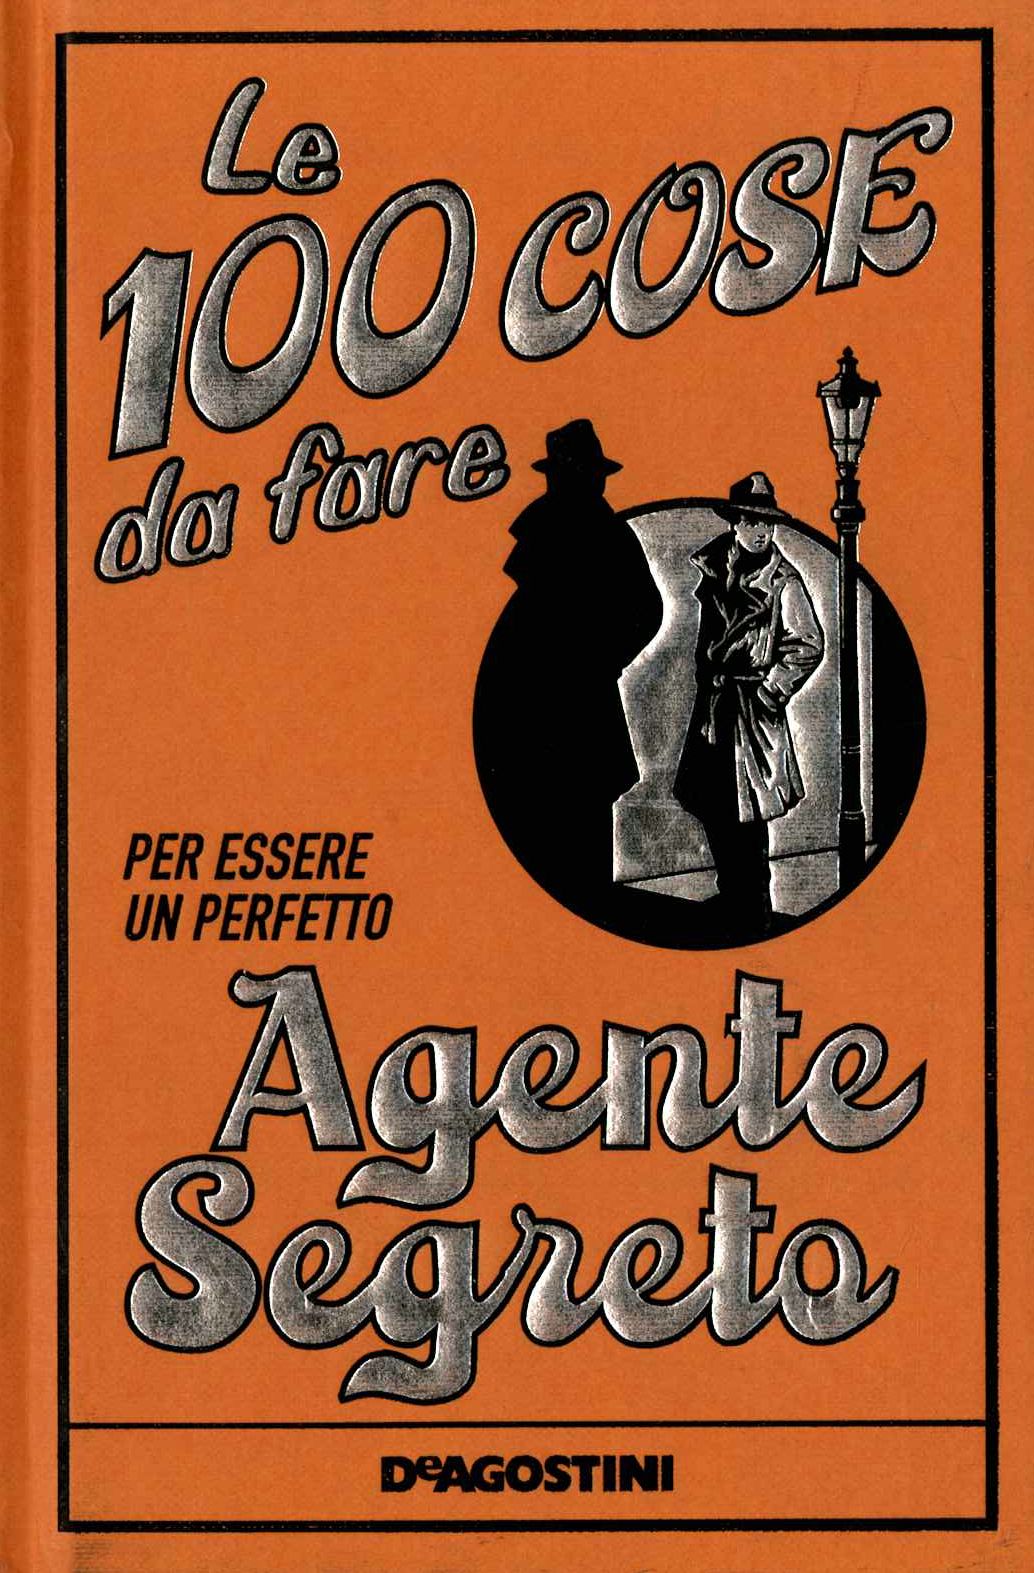 Le 100 cose da fare per essere un perfetto agente segreto